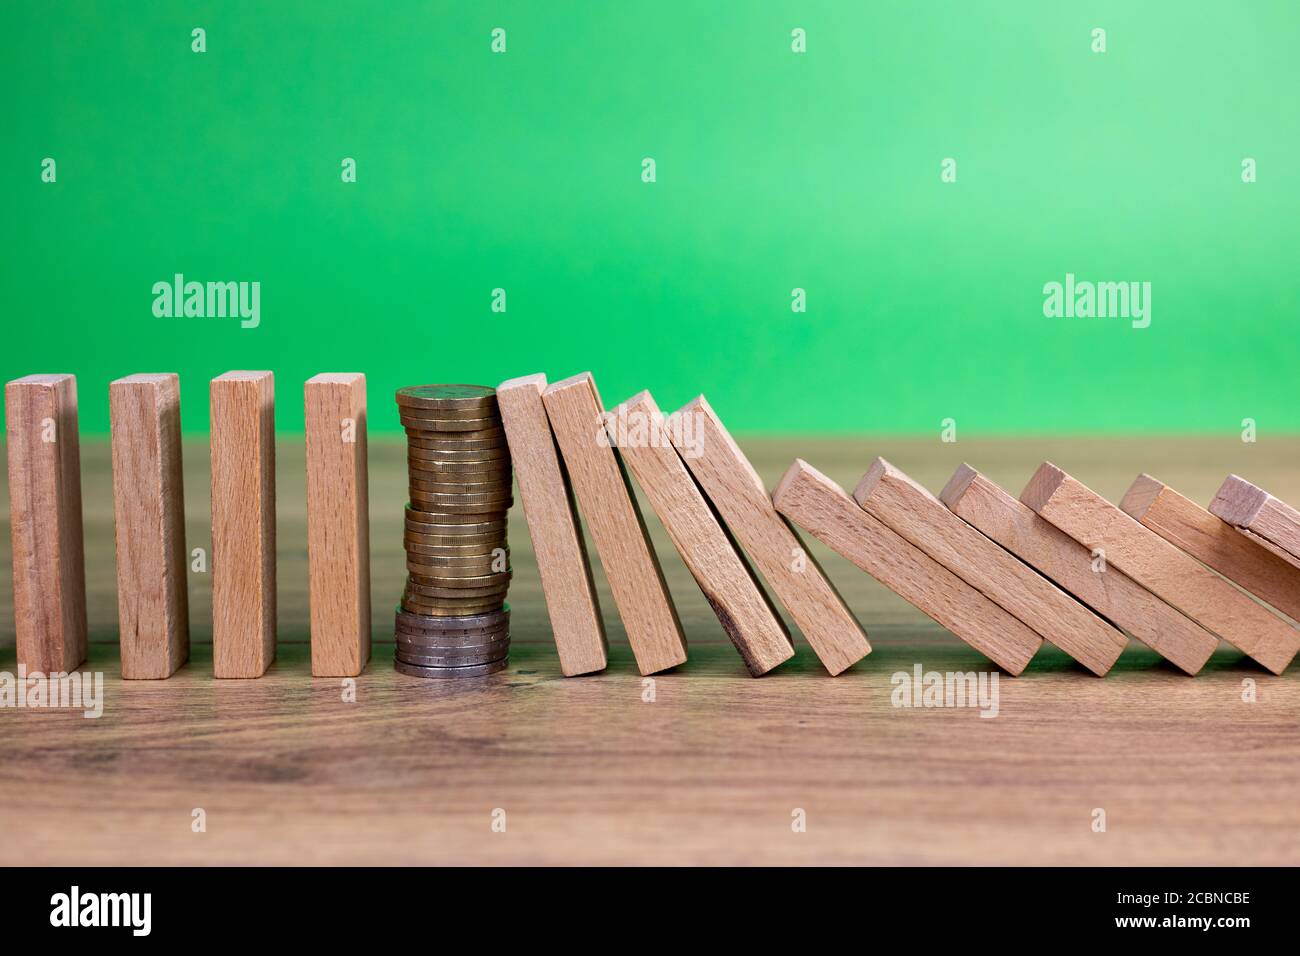 concept effet domino avec carreaux en bois bloqués par pièce de monnaie arrière-plan vert Banque D'Images